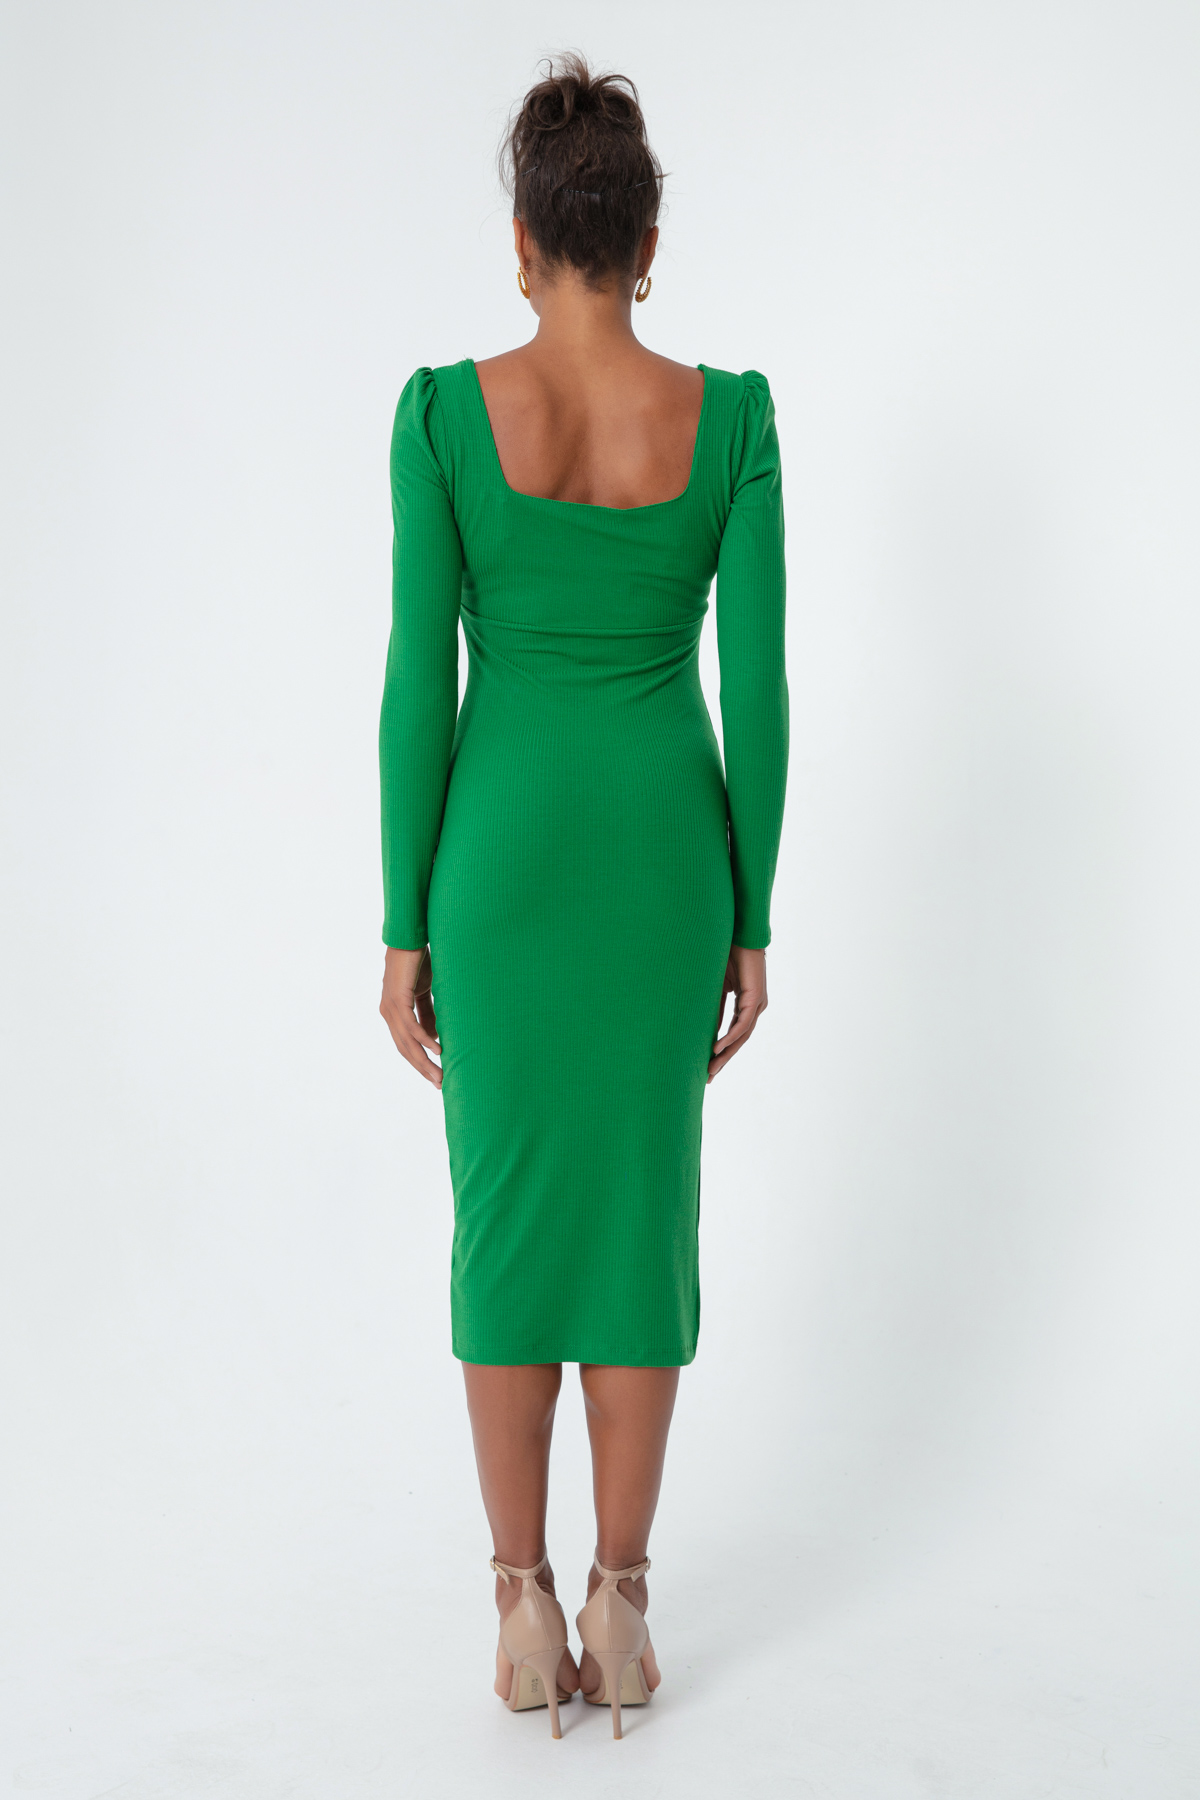 Women's Green Slit Knitted Dress